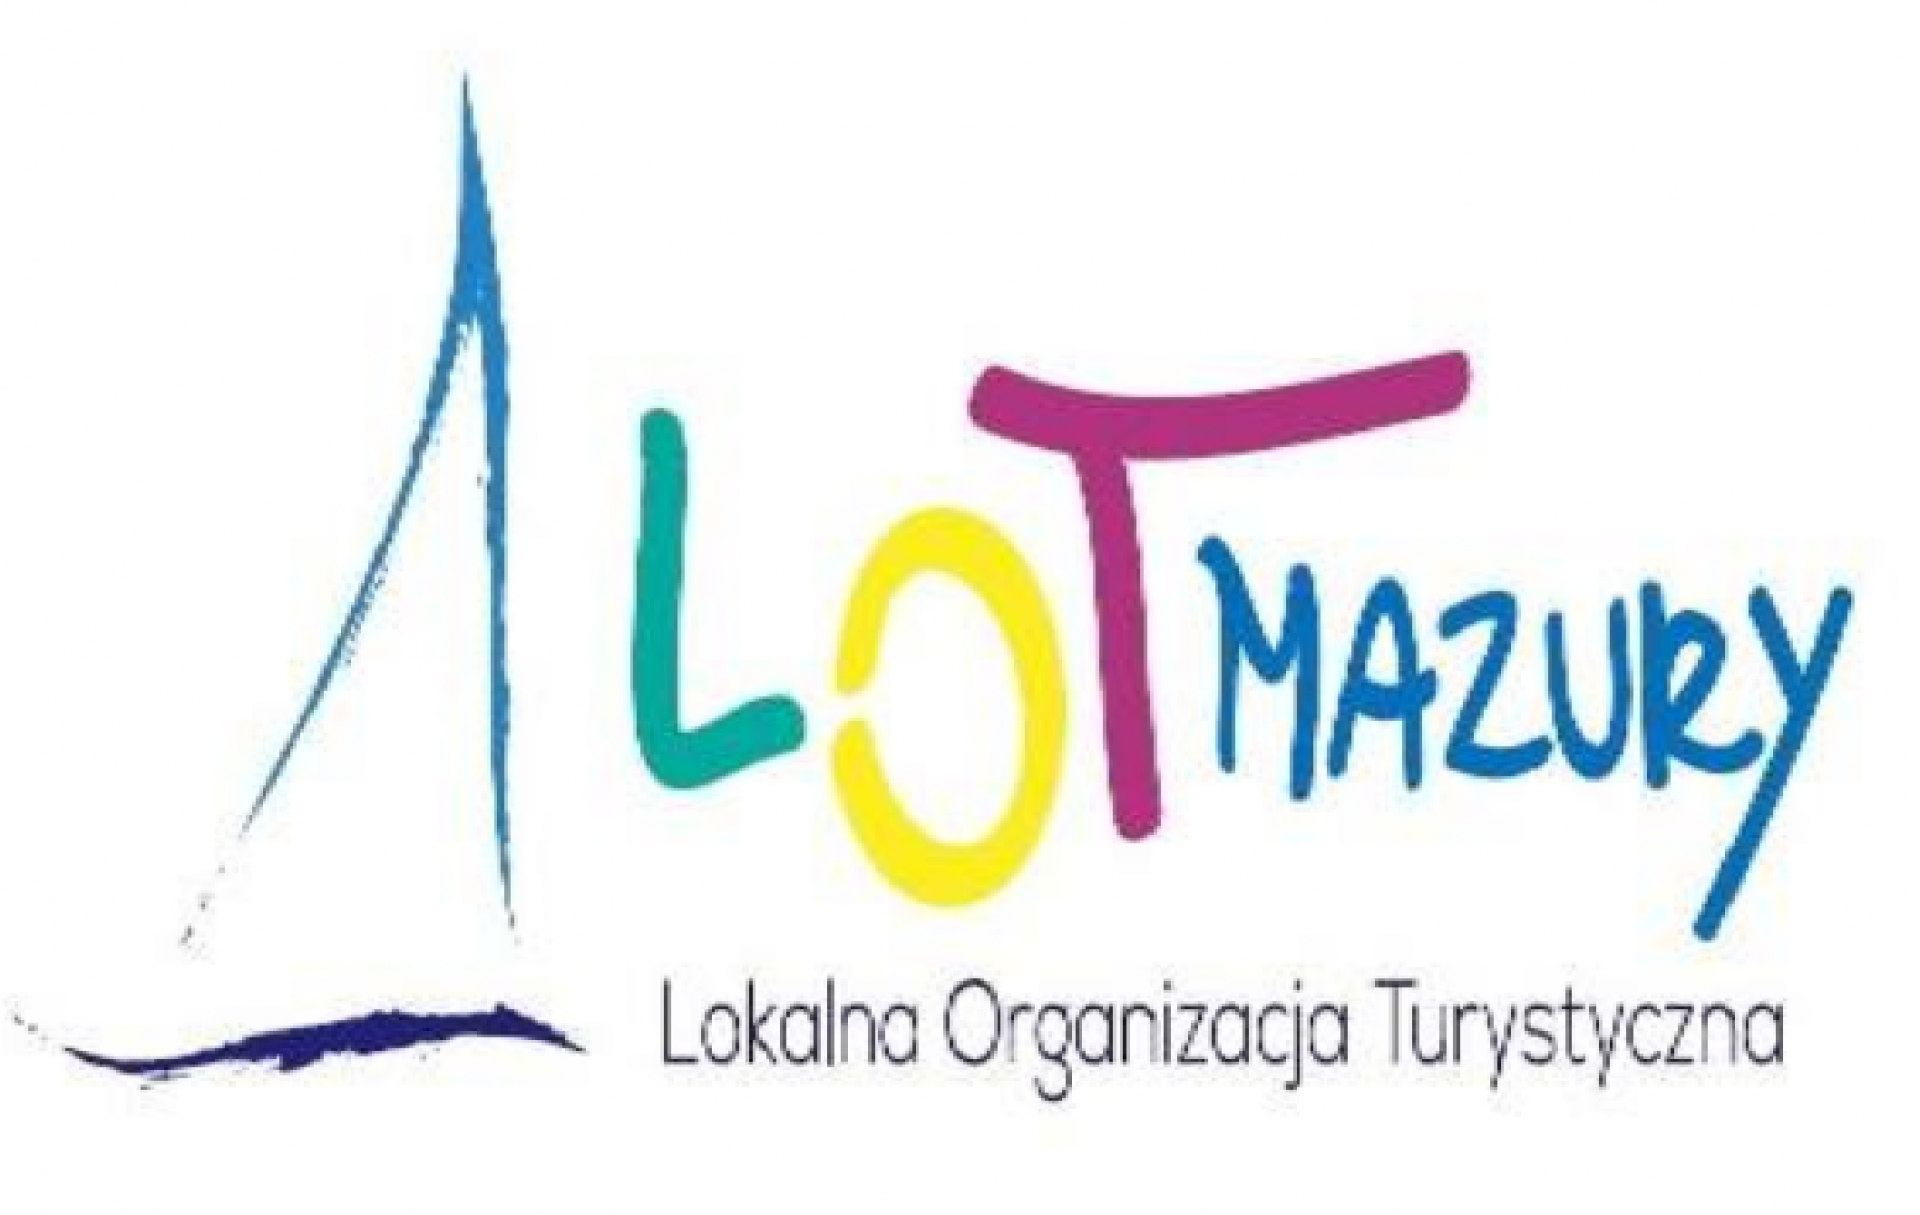 Lot Mazury logo